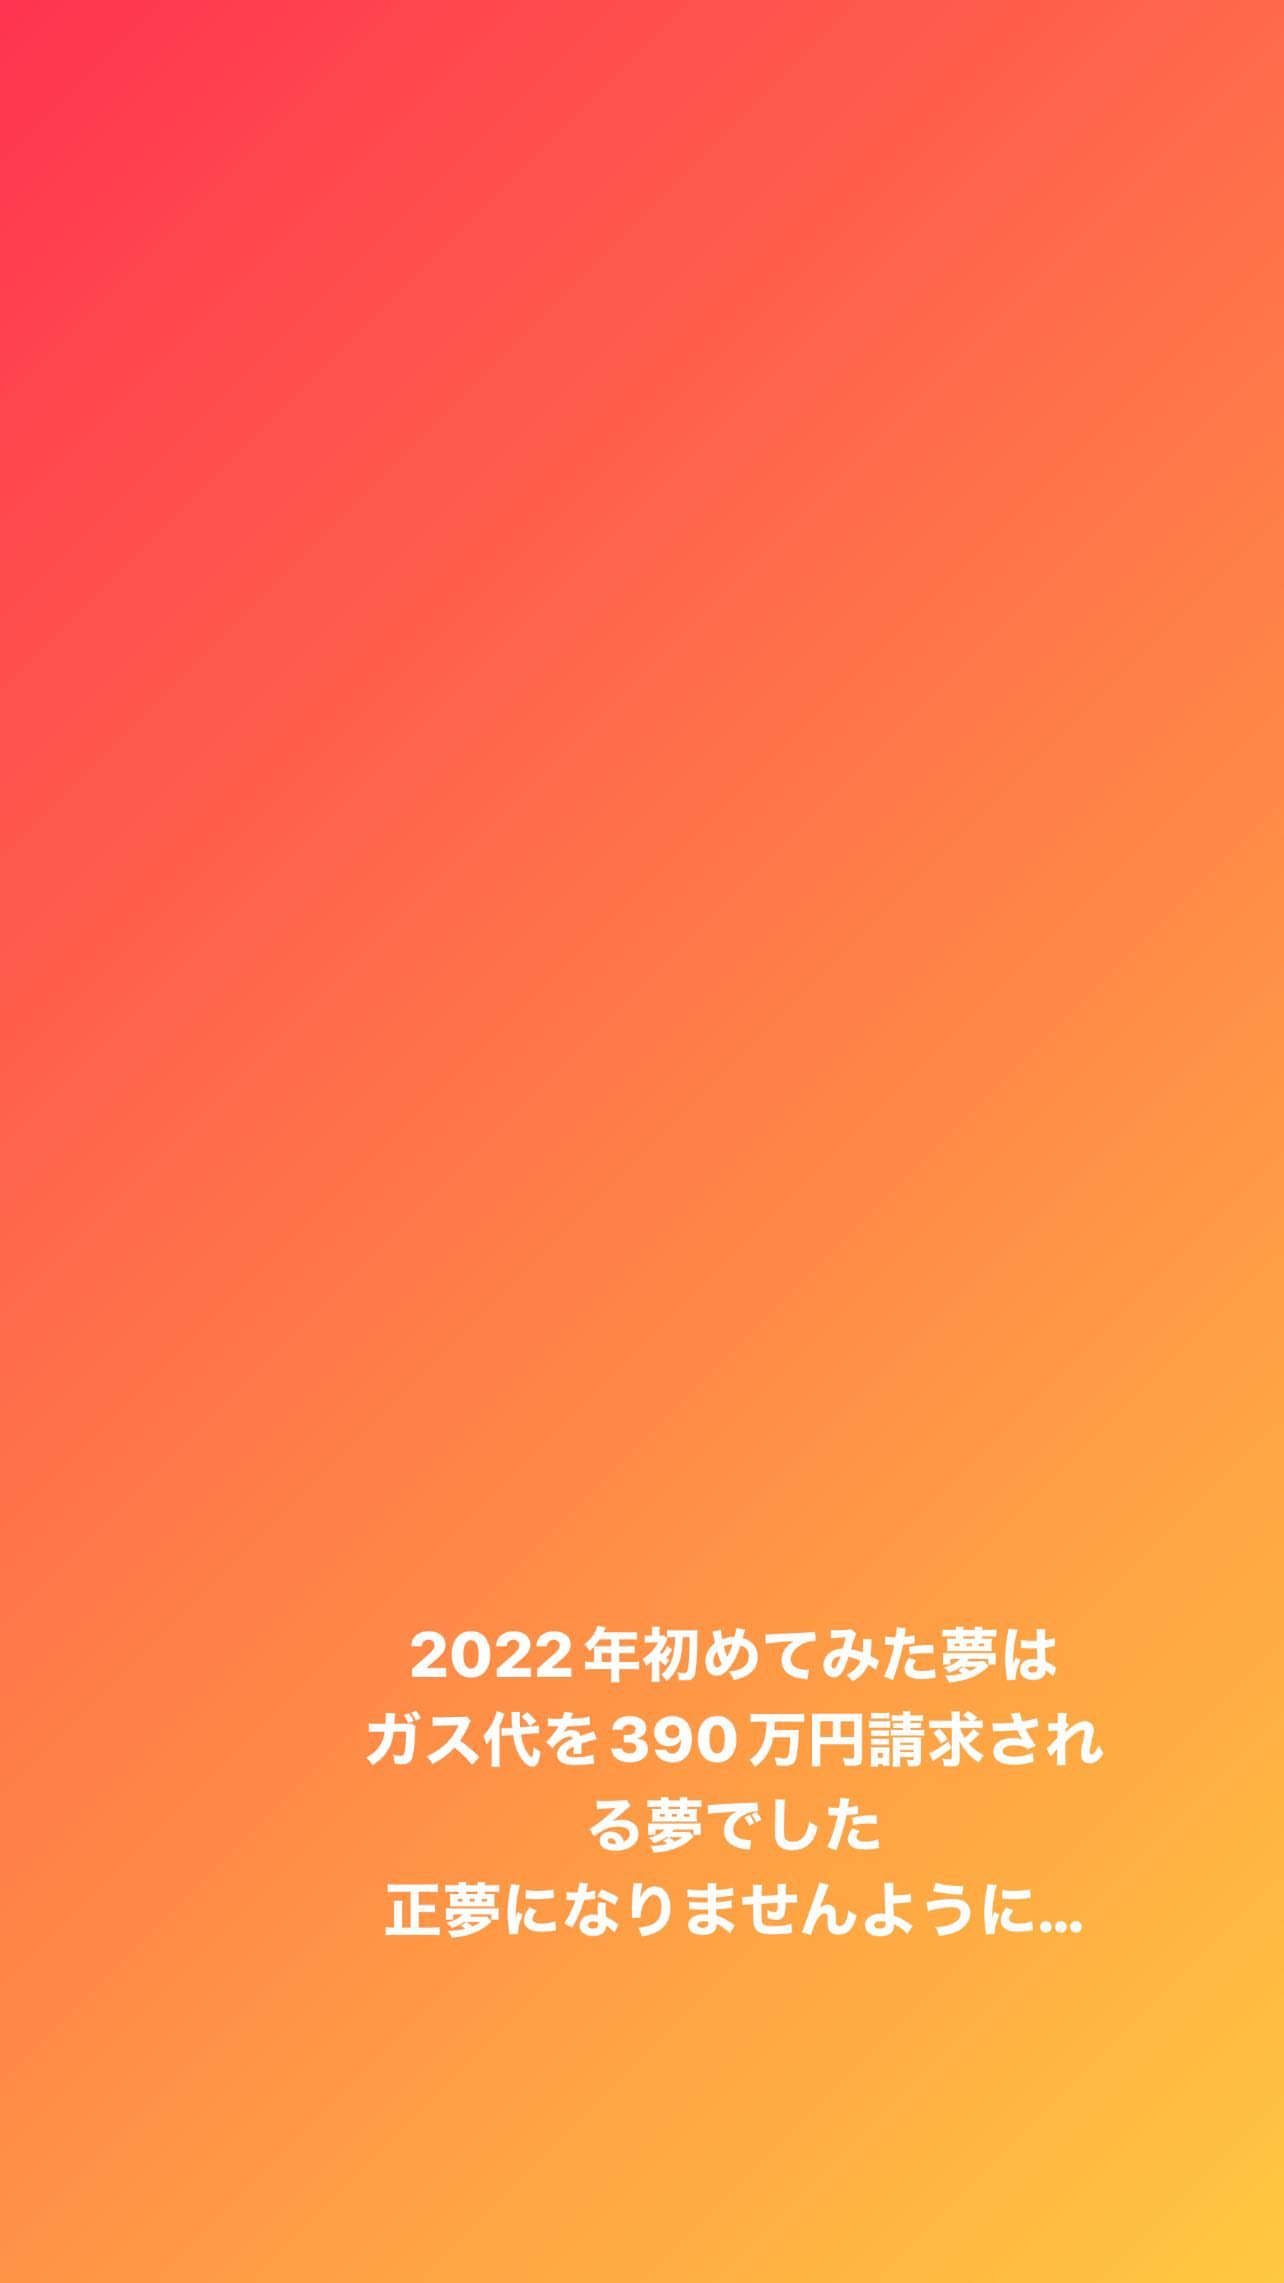 松村沙友理「2022年初めてみた夢はガス代を390万円請求される夢でした」